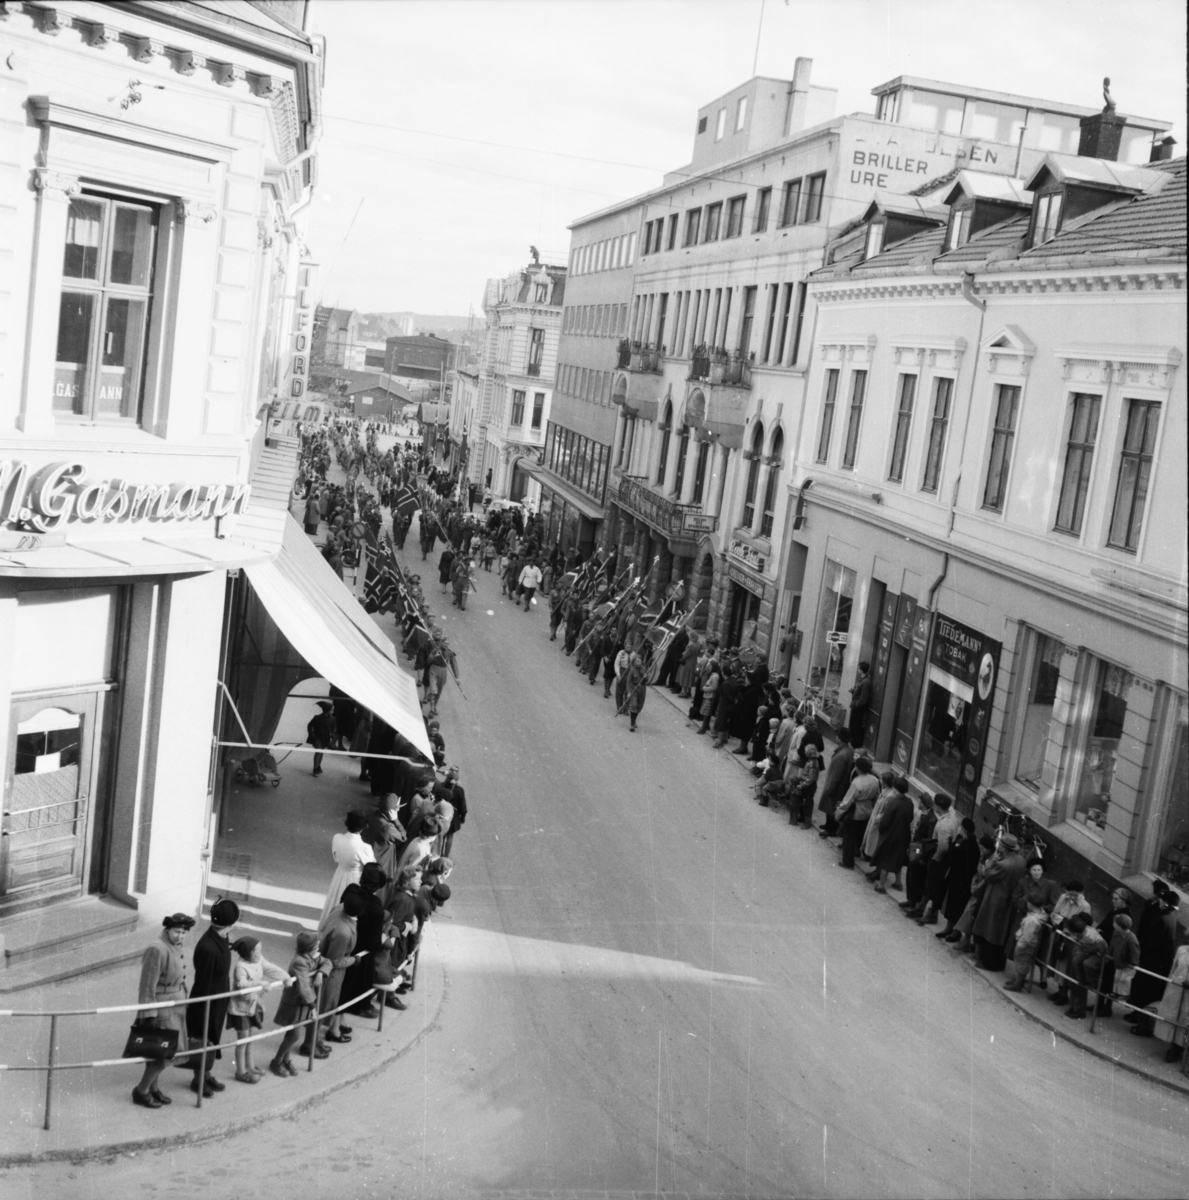 Vardens arkiv. "St. Georgsdagen i Skien" 23.04.1954